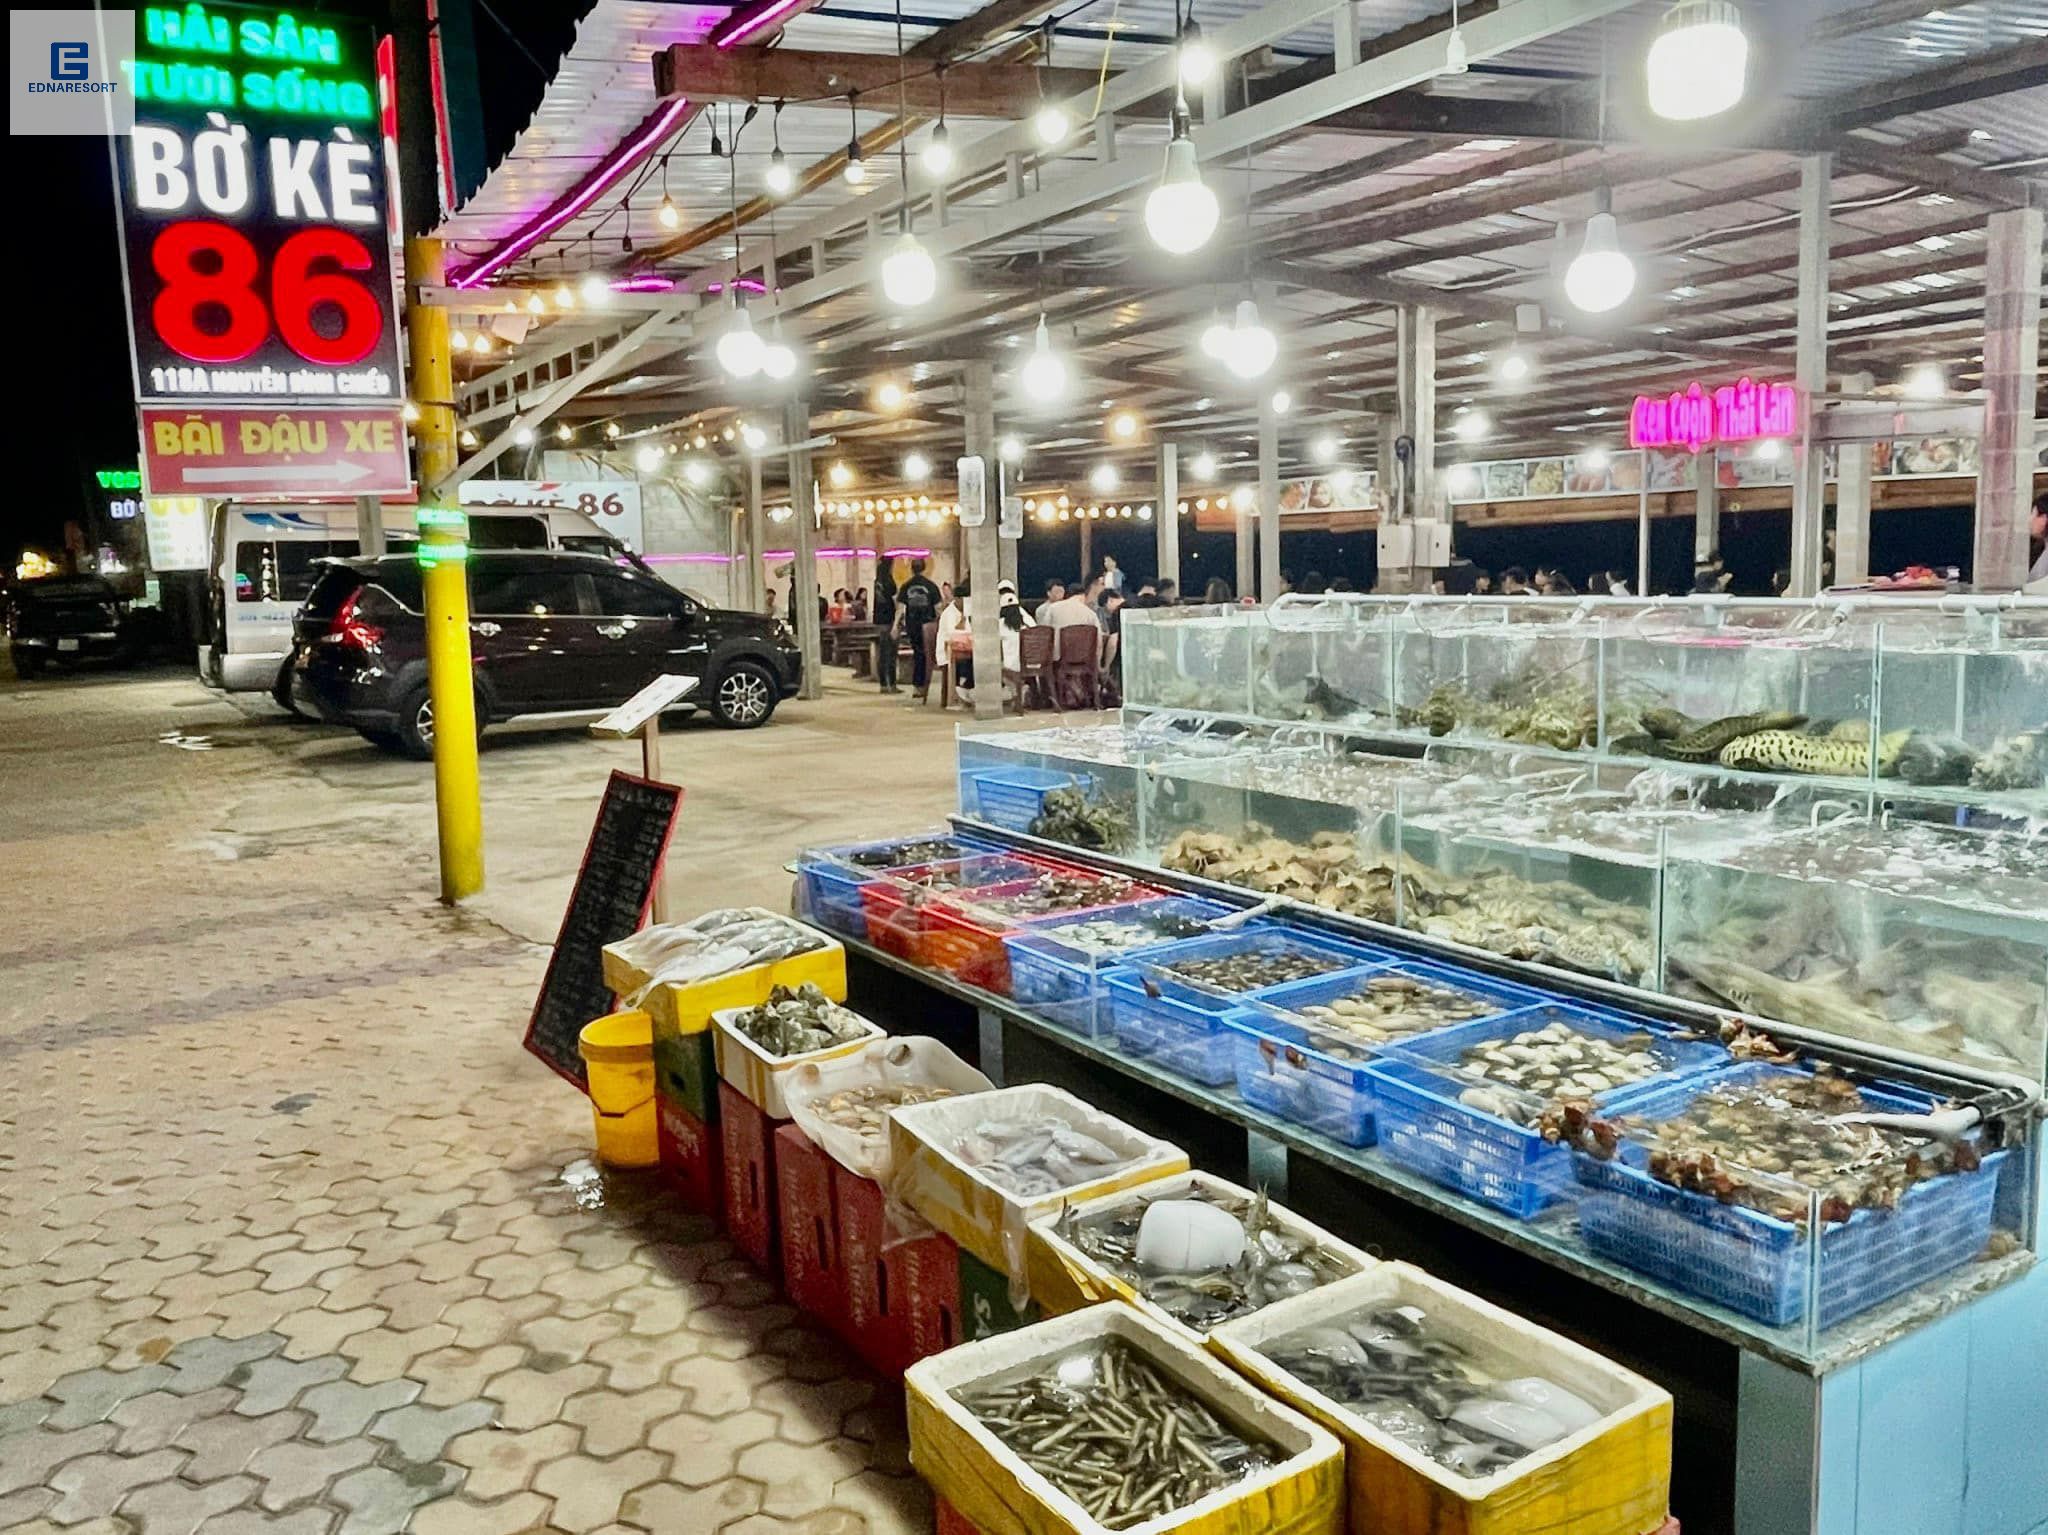 Nhà Hàng Hải Sản Tươi Sống Bờ Kè 86 (fresh seafood restaurant boke 86)